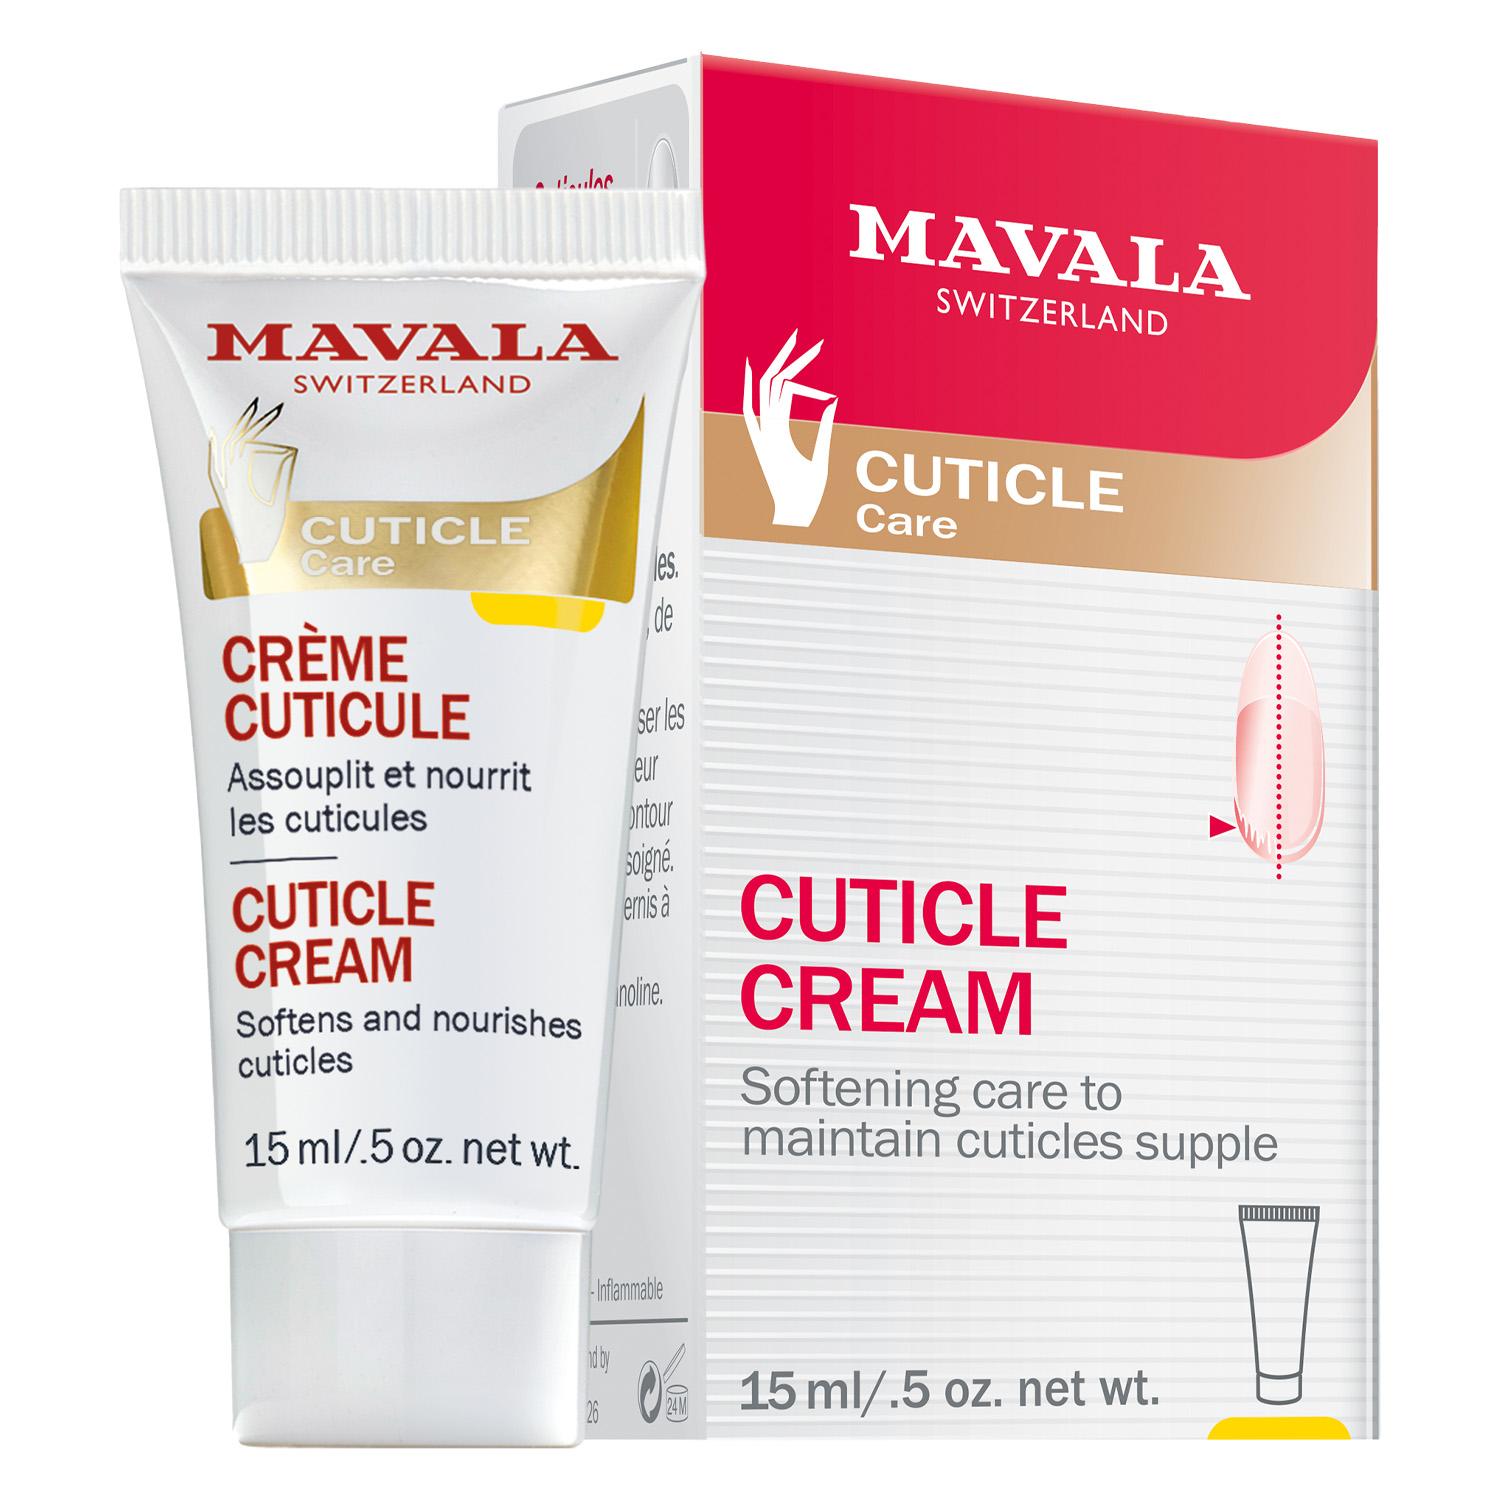 MAVALA Care - Cuticle Cream